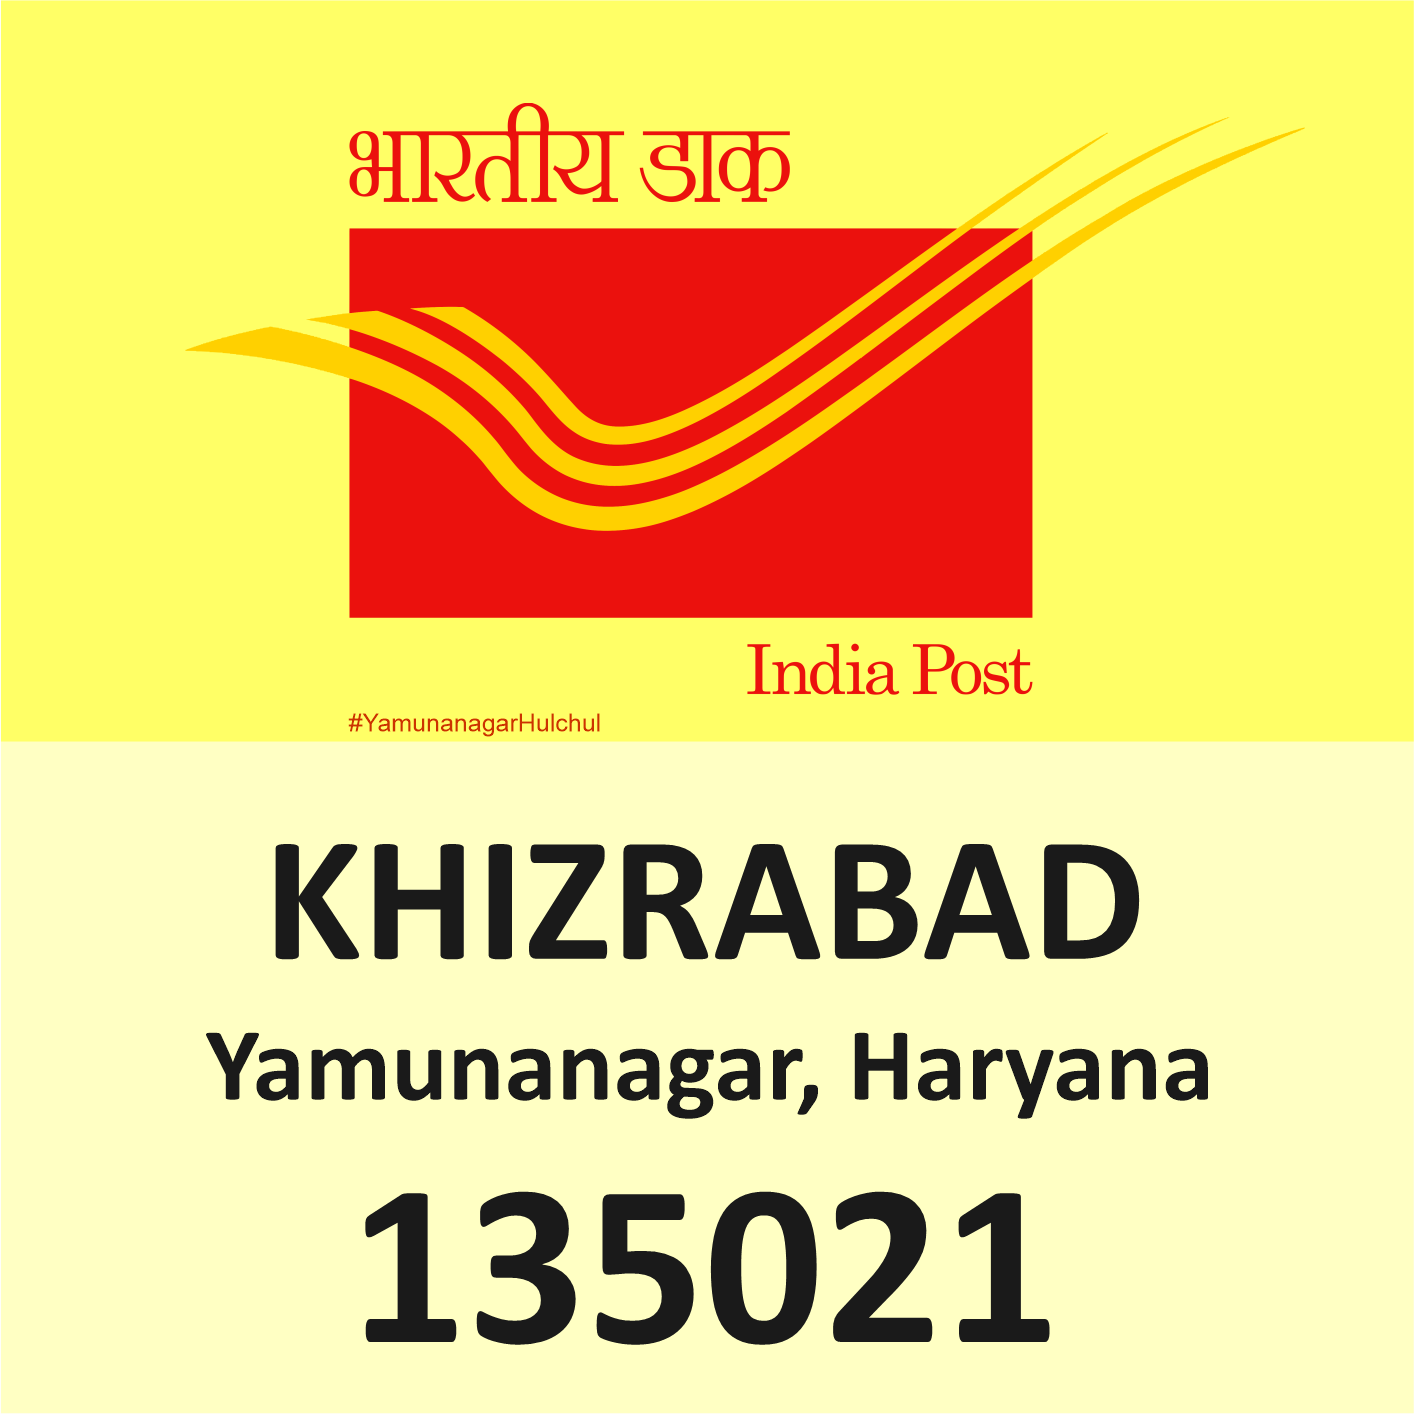 Pin Code of Khizrabad Yamunanagar is 135021, #YamunanagarHulchul, #यमुनानगरहलचल, #PanditKhabri, Pandit Khabri, Pin Code of Yamunanagar, Haryana,